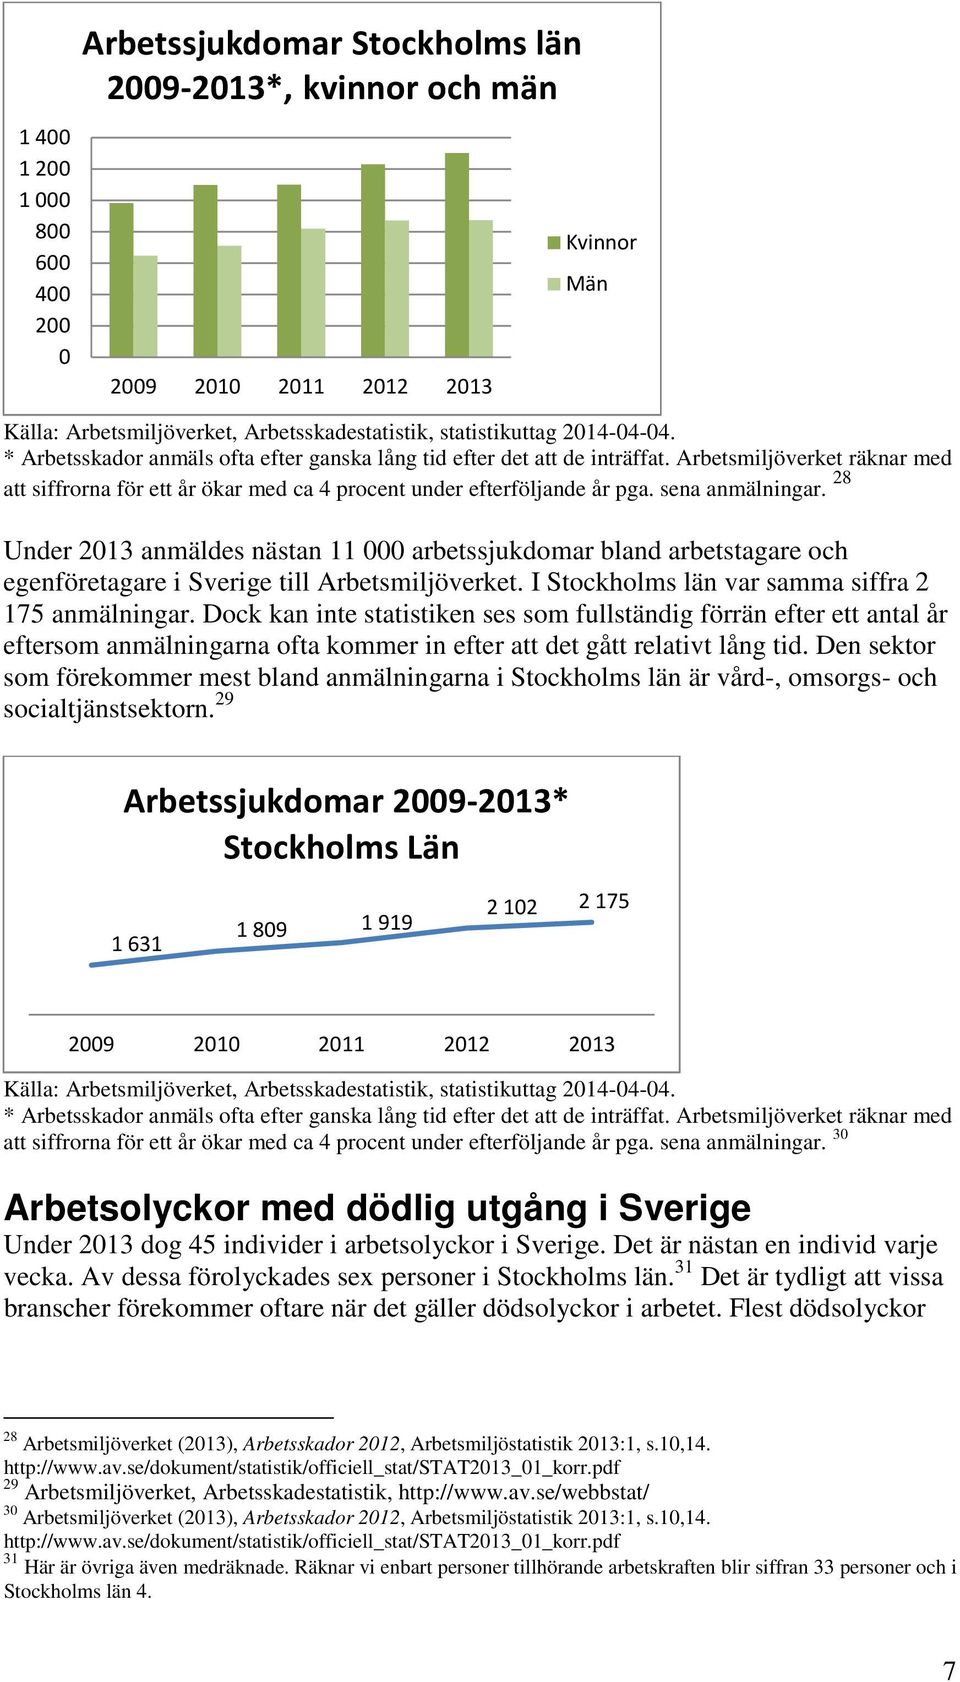 28 Under 2013 anmäldes nästan 11 000 arbetssjukdomar bland arbetstagare och egenföretagare i Sverige till Arbetsmiljöverket. I Stockholms län var samma siffra 2 175 anmälningar.